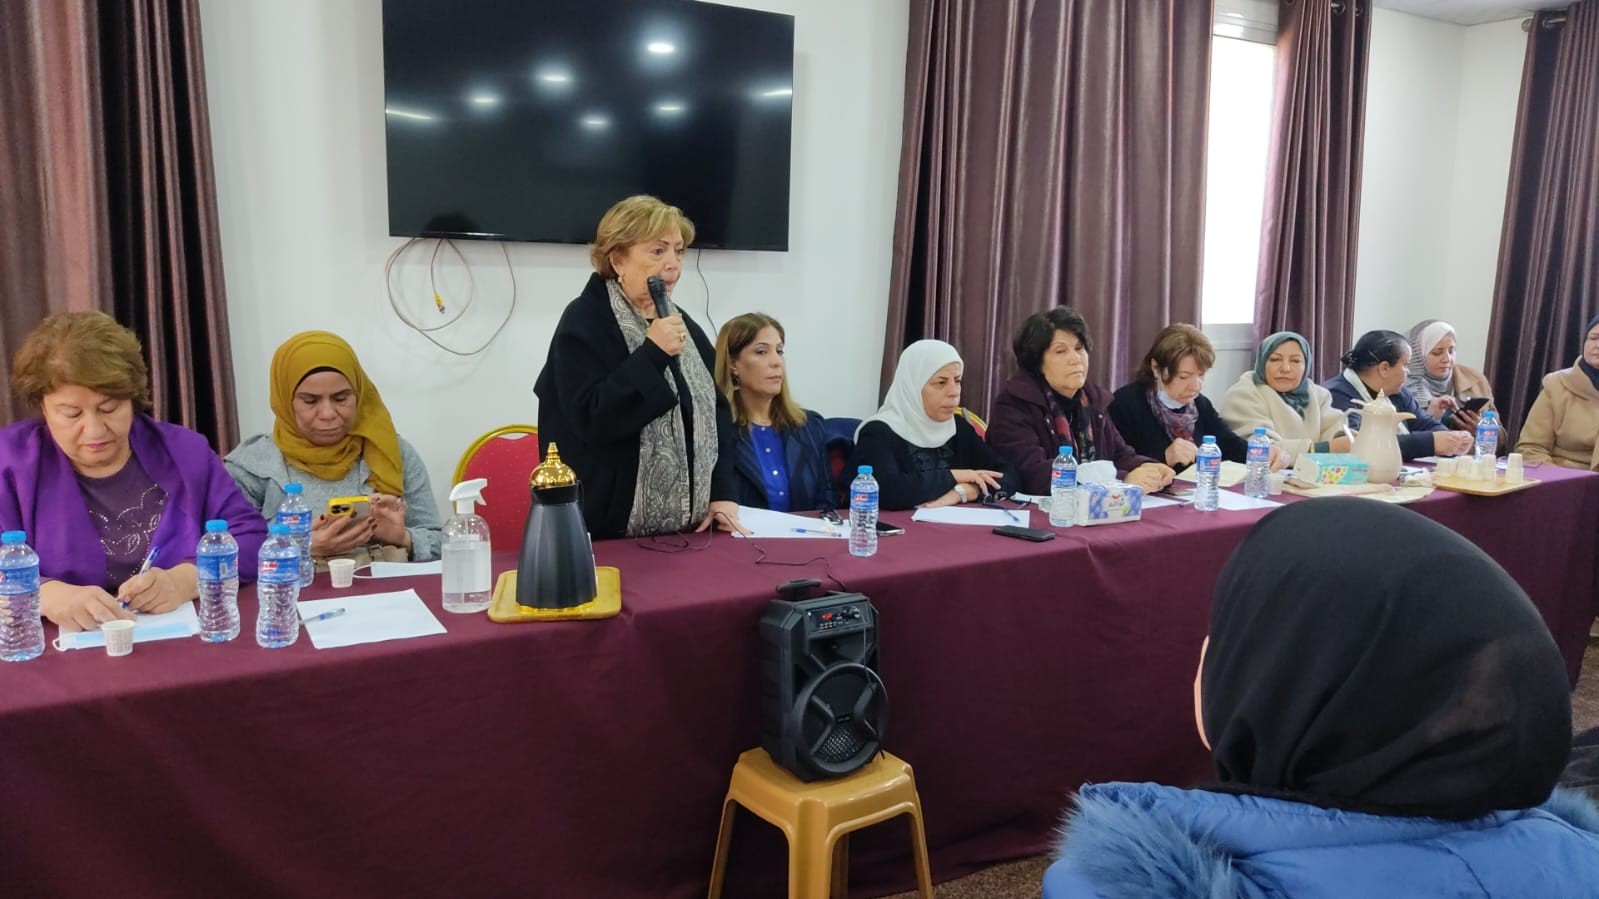 الاتحاد العام للمرأة الفلسطينية في المحافظات الجنوبية وفي الضفة الغربية يلتقيان في سلسلة اجتماعات في قطاع غزة 34.jpg